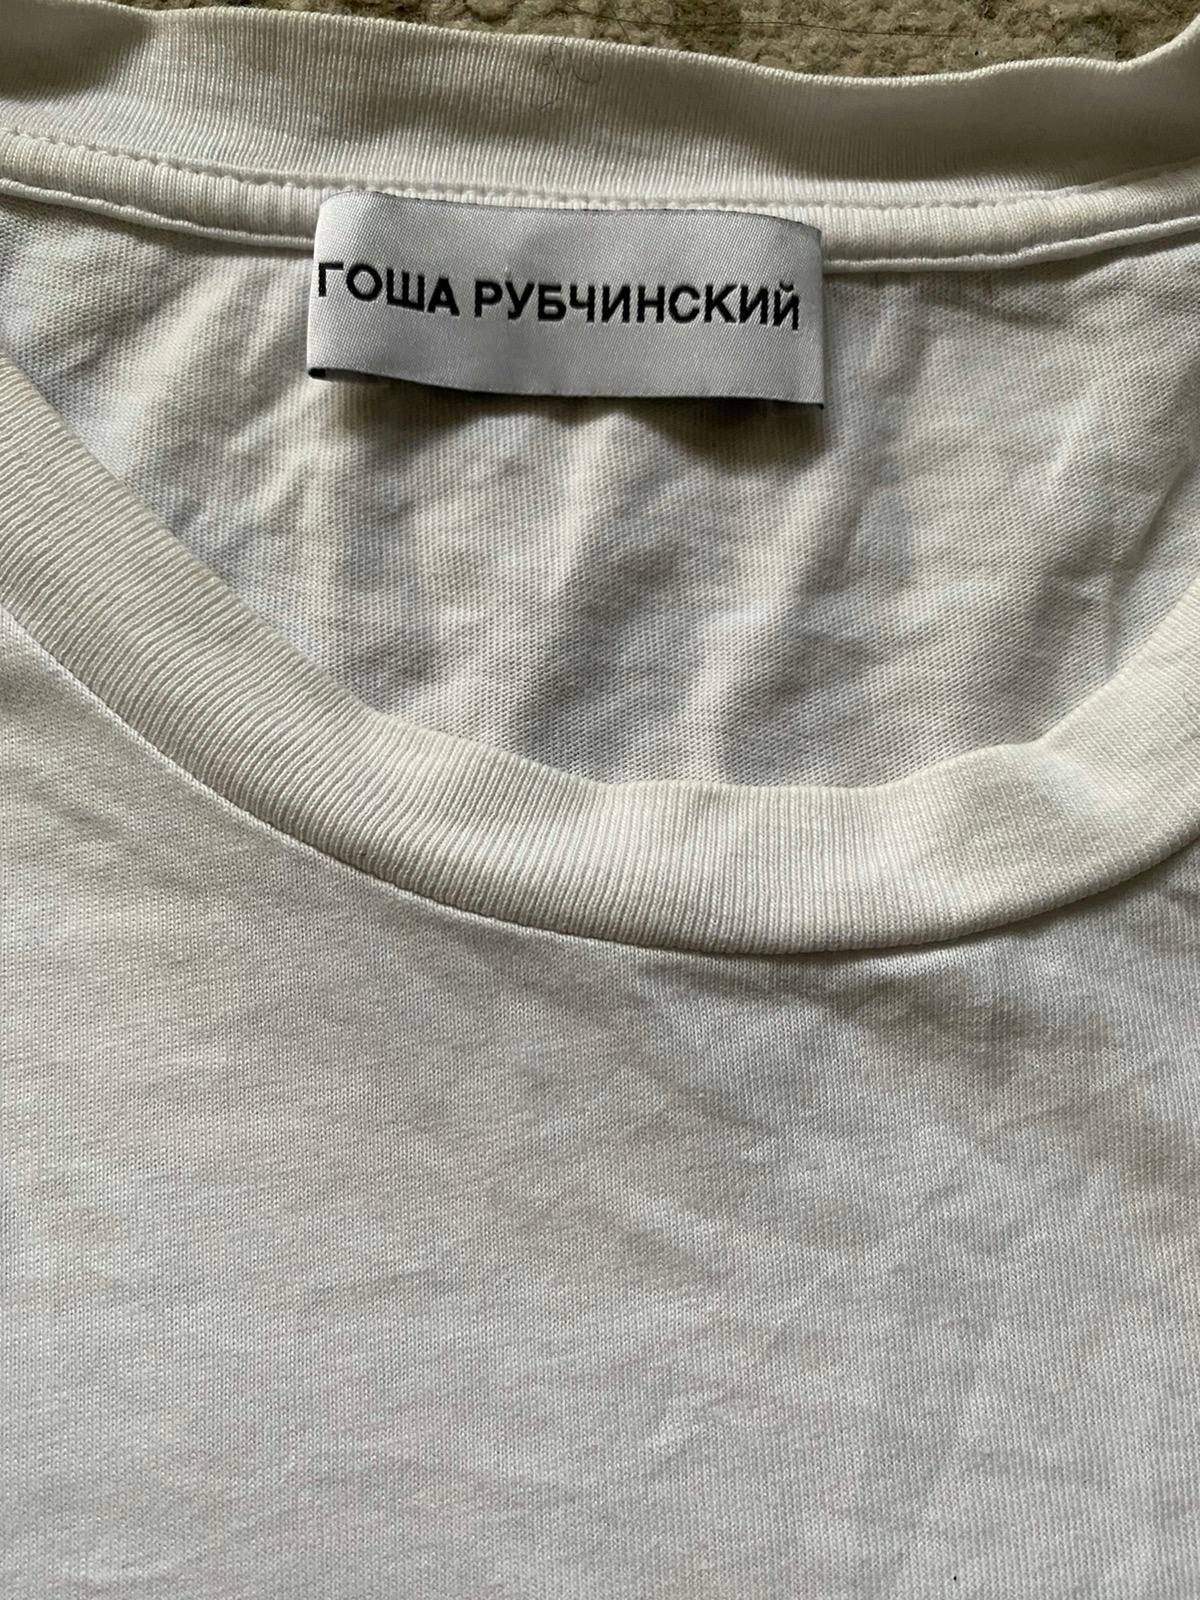 Gosha Rubchinskiy White T-Shirt - 5